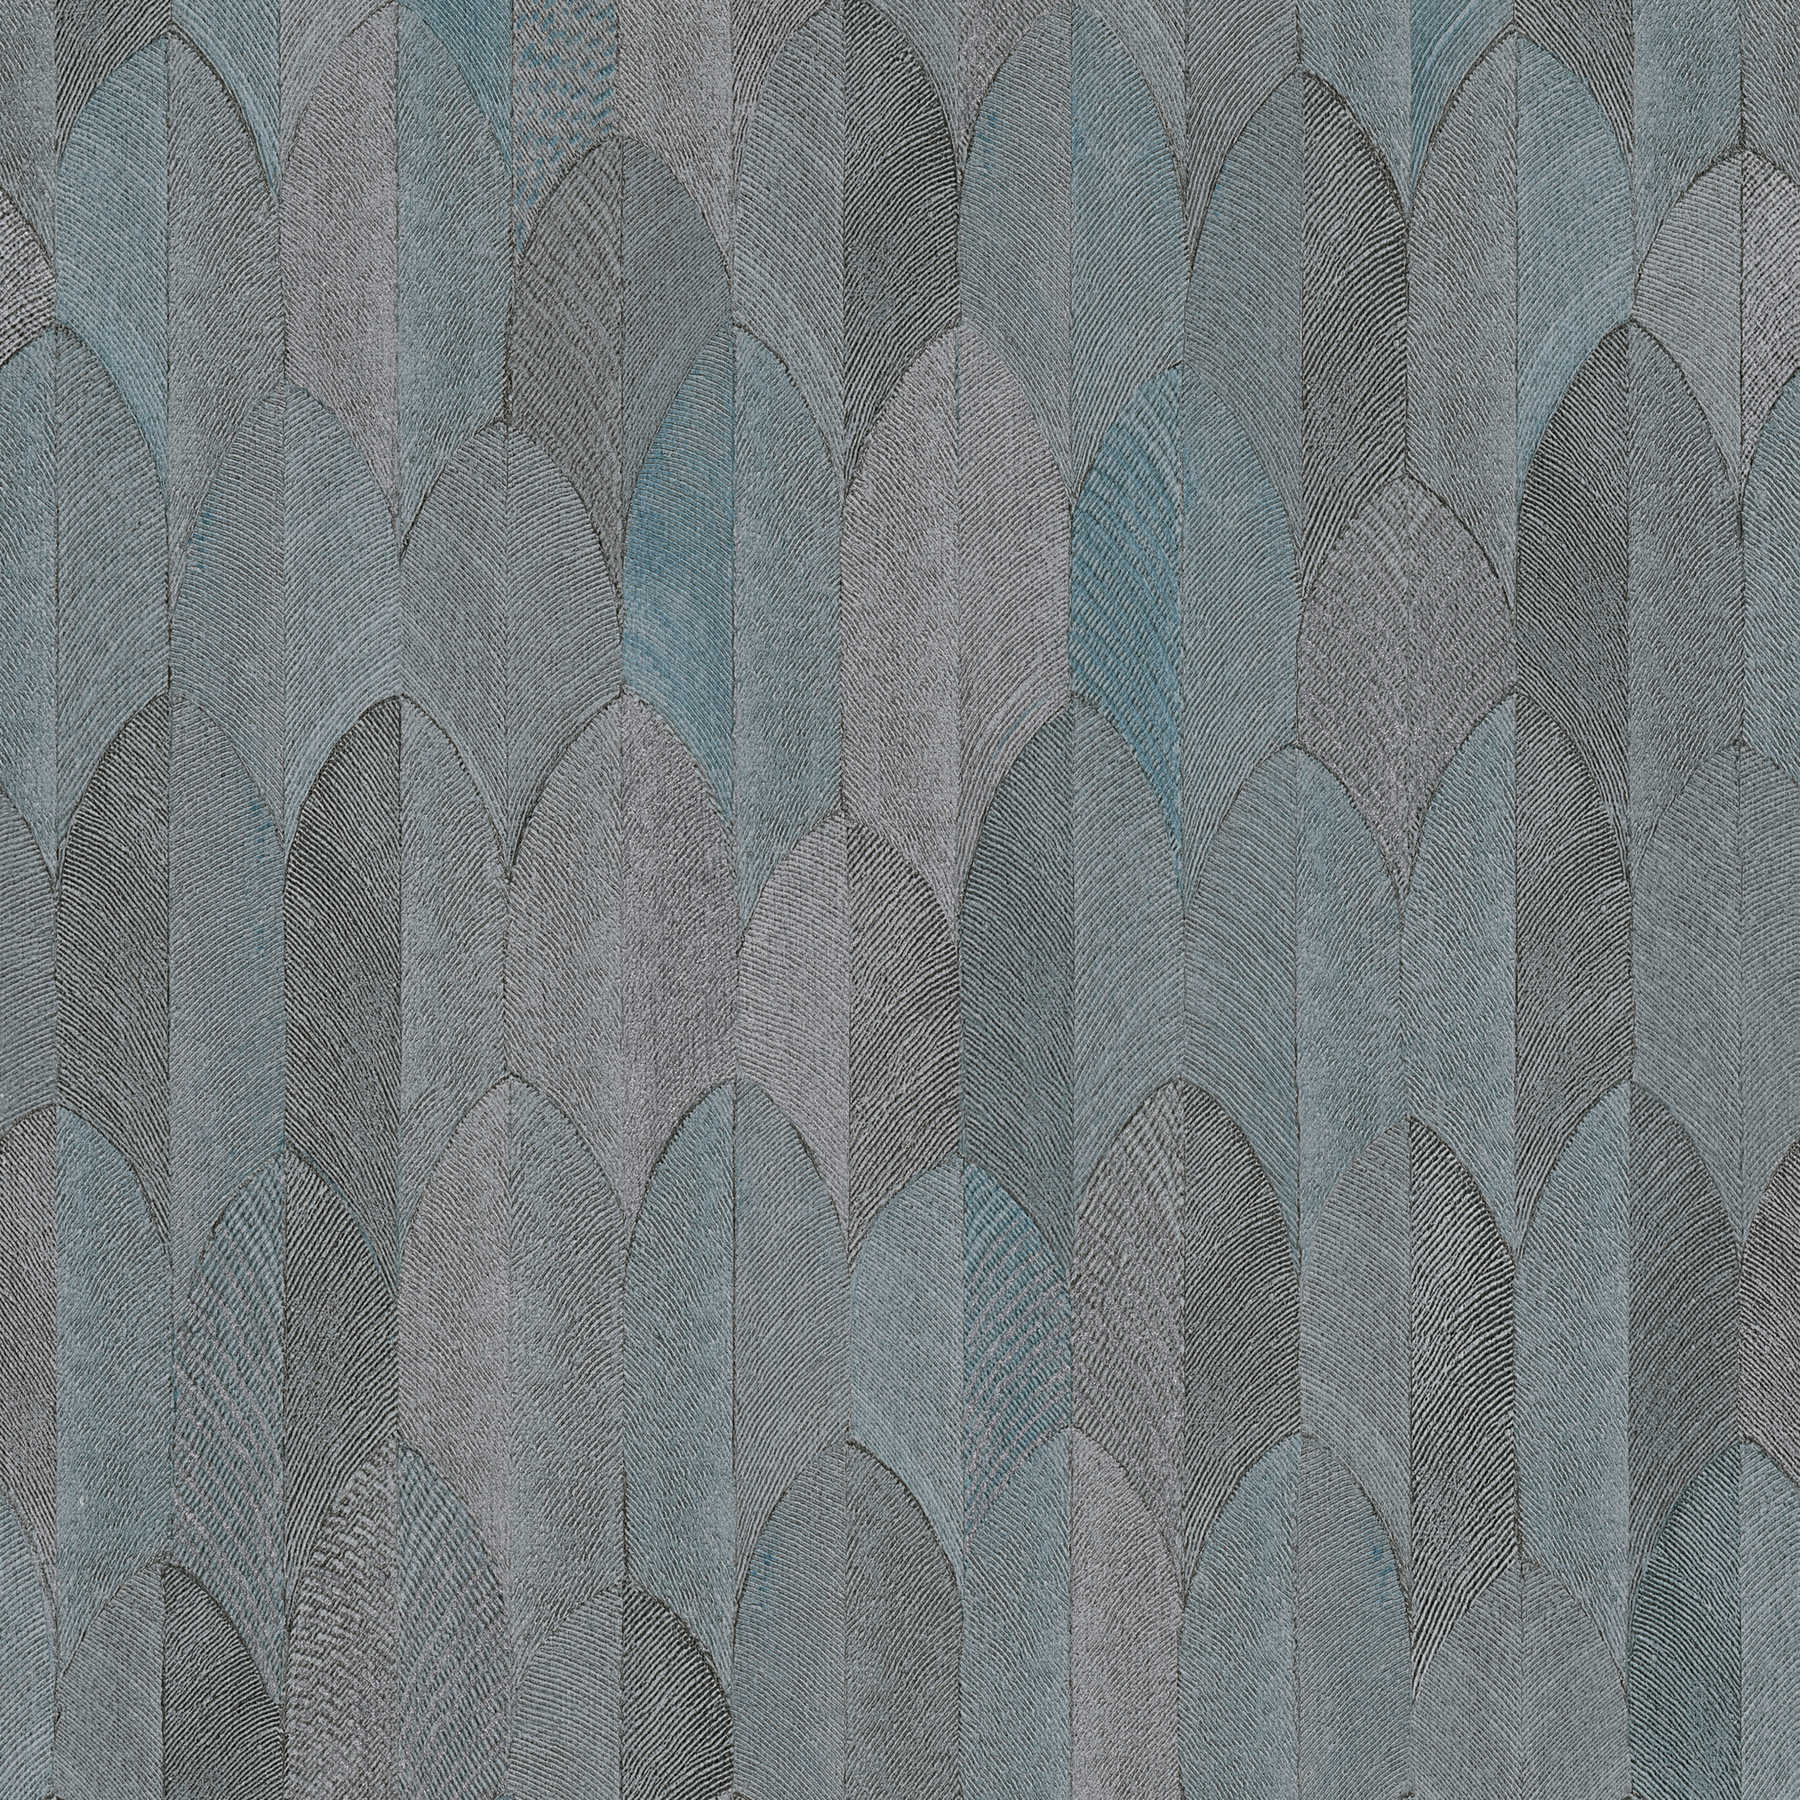 Papier peint design symétrique avec effet métallique - gris, bleu, noir
